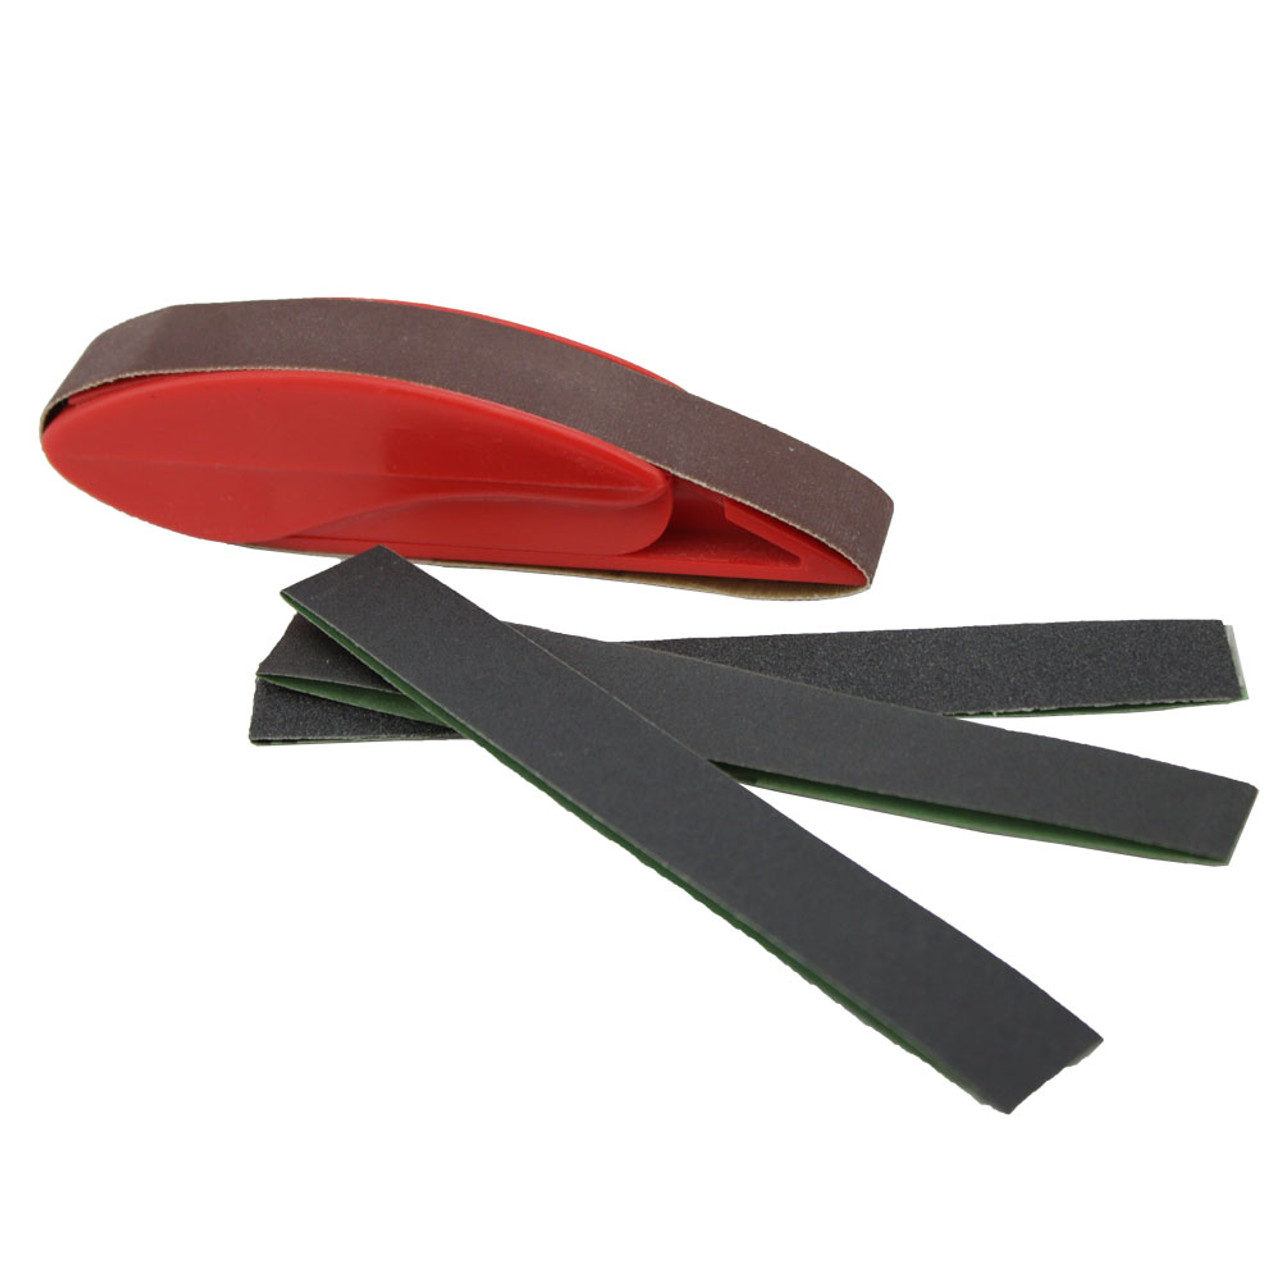 Zona Handy Sander Set with 3/4 inch Sanding Belts | Esslinger 11.259